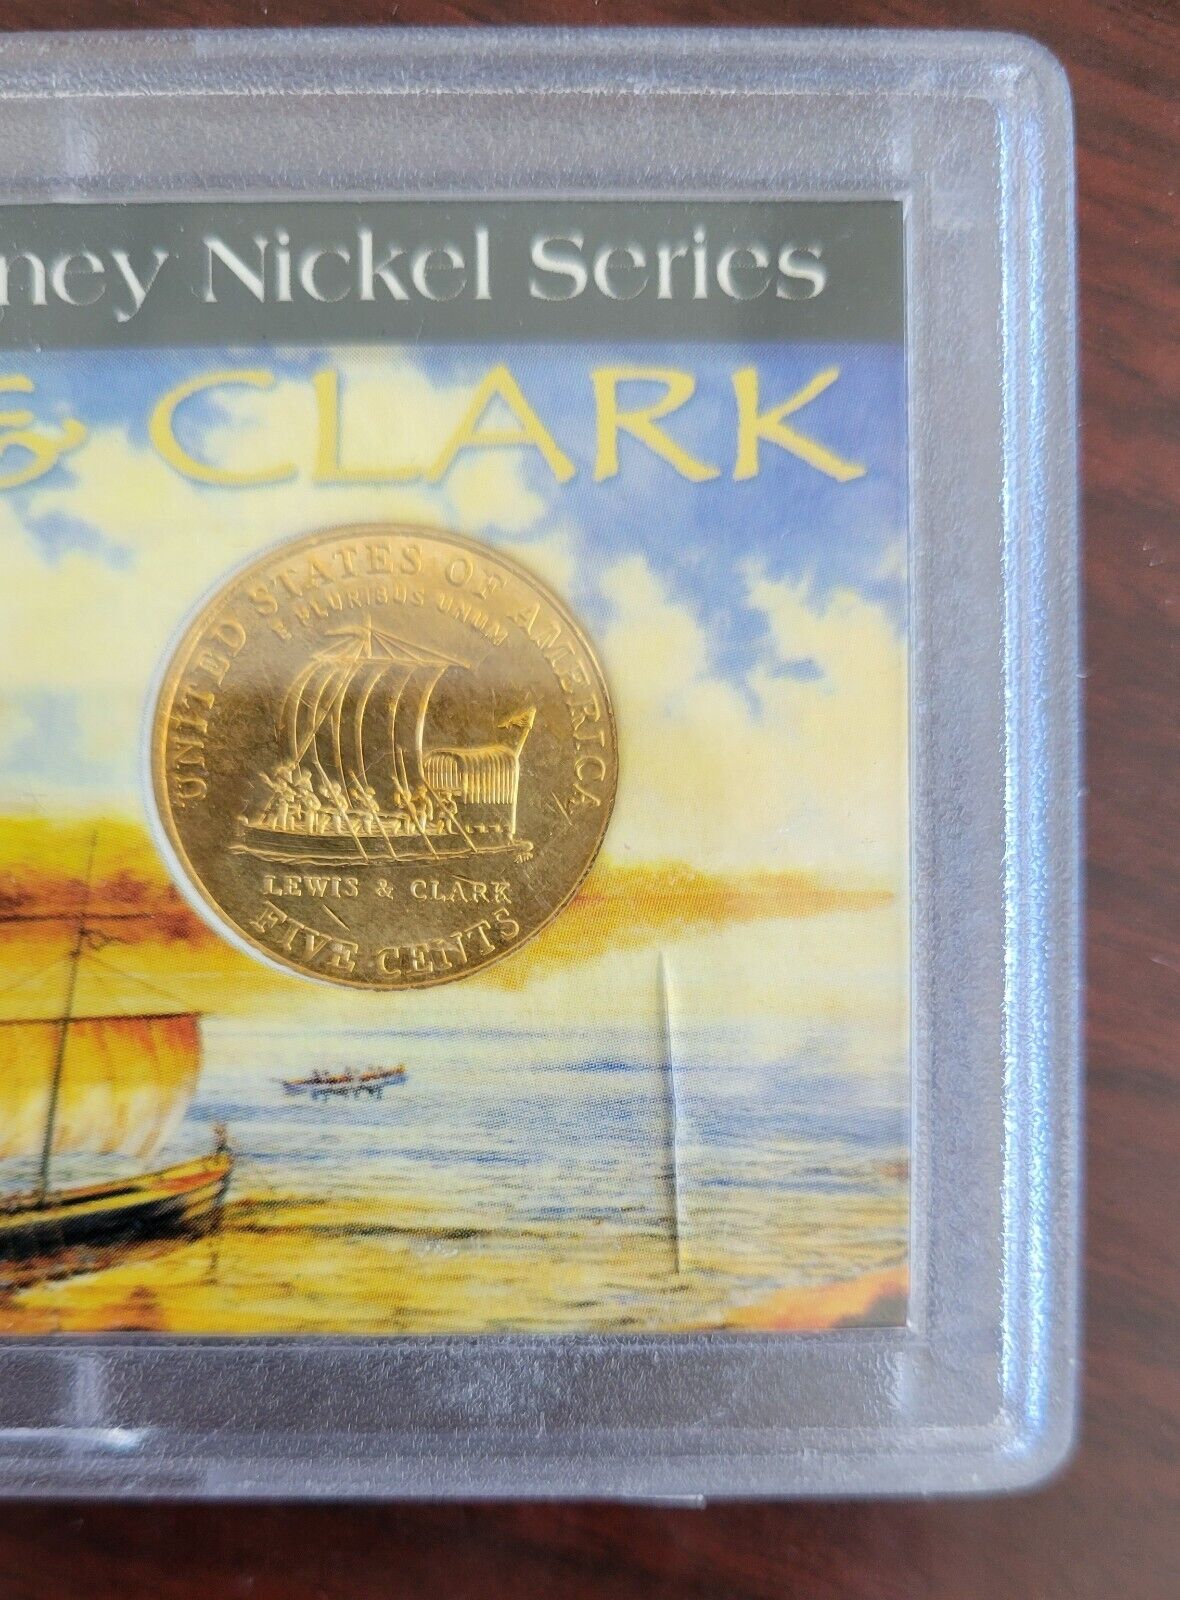 2004 Whitman Westward Journey Nickel Series Set Nickels Lewis & Clark Gold Tone